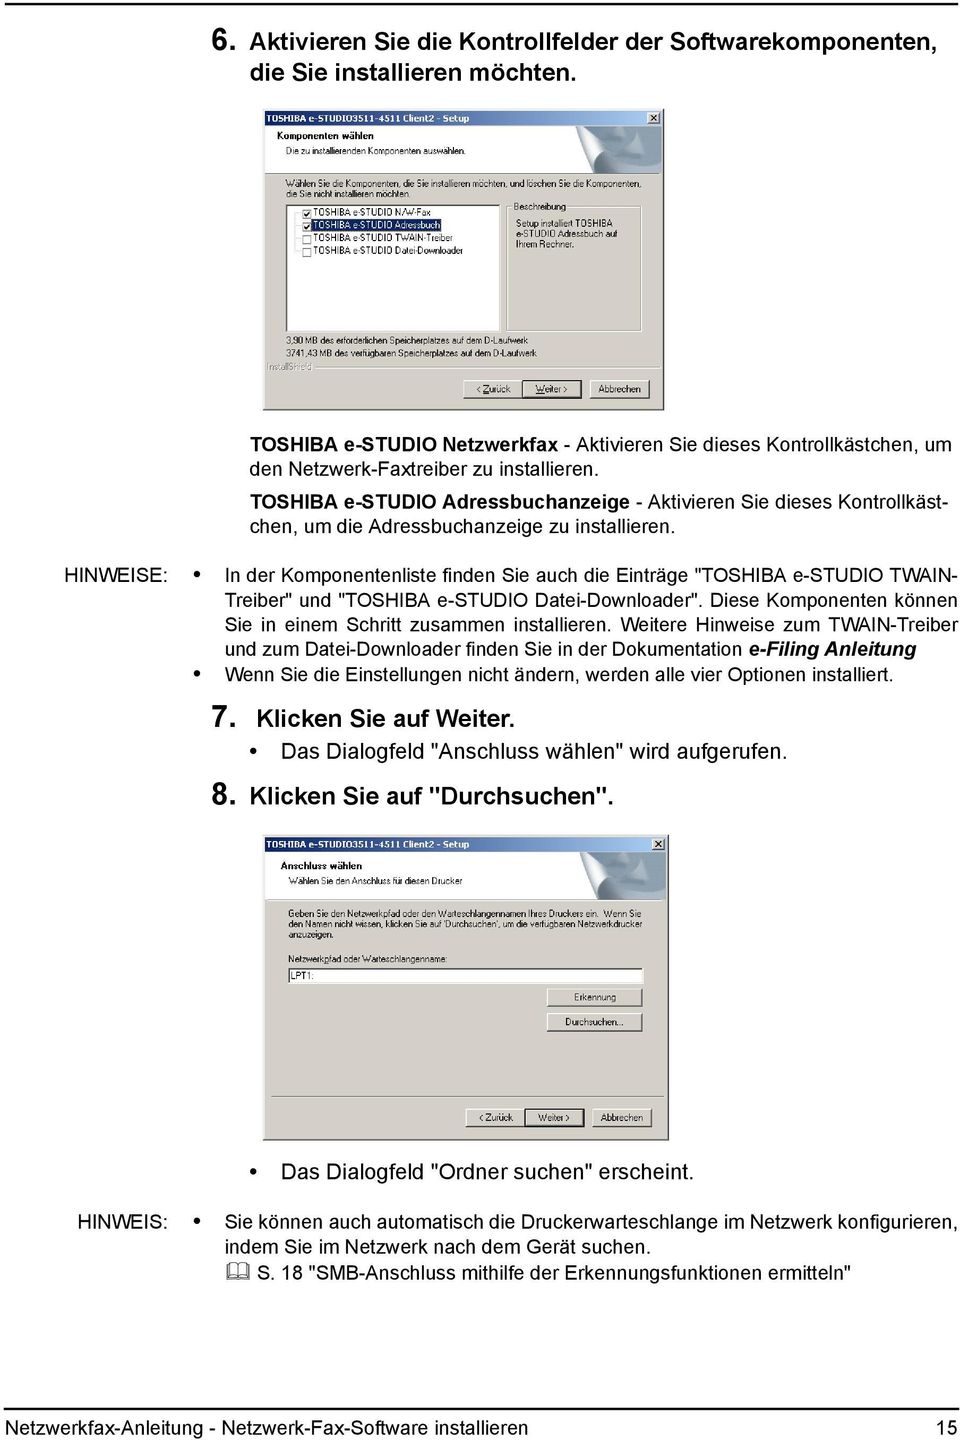 TOSHIBA e-studio Adressbuchanzeige - Aktivieren Sie dieses Kontrollkästchen, um die Adressbuchanzeige zu installieren.